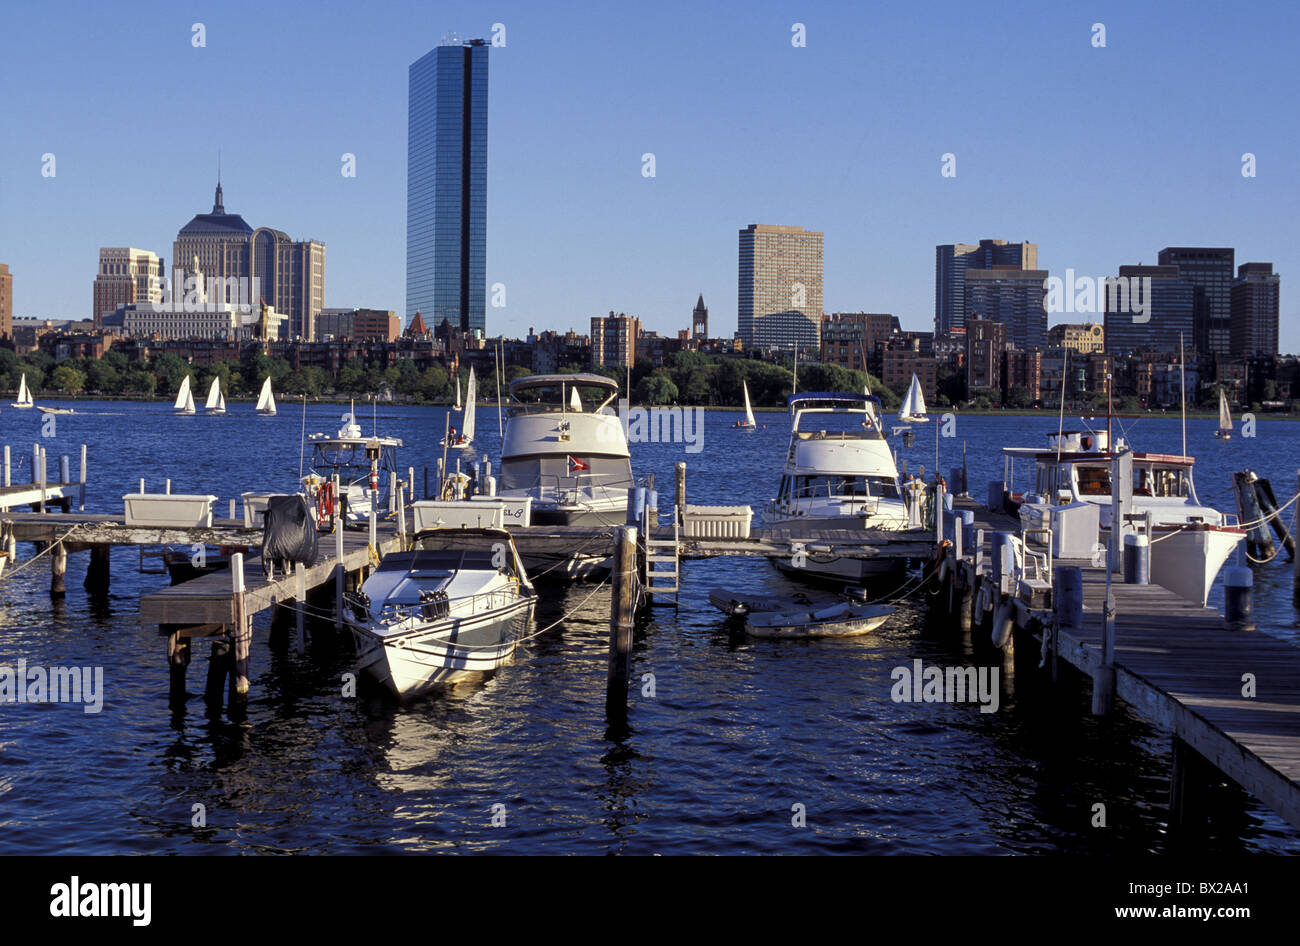 James River America Boston Massachusetts États-Unis Amérique du Nord USA port bateaux skyline Banque D'Images